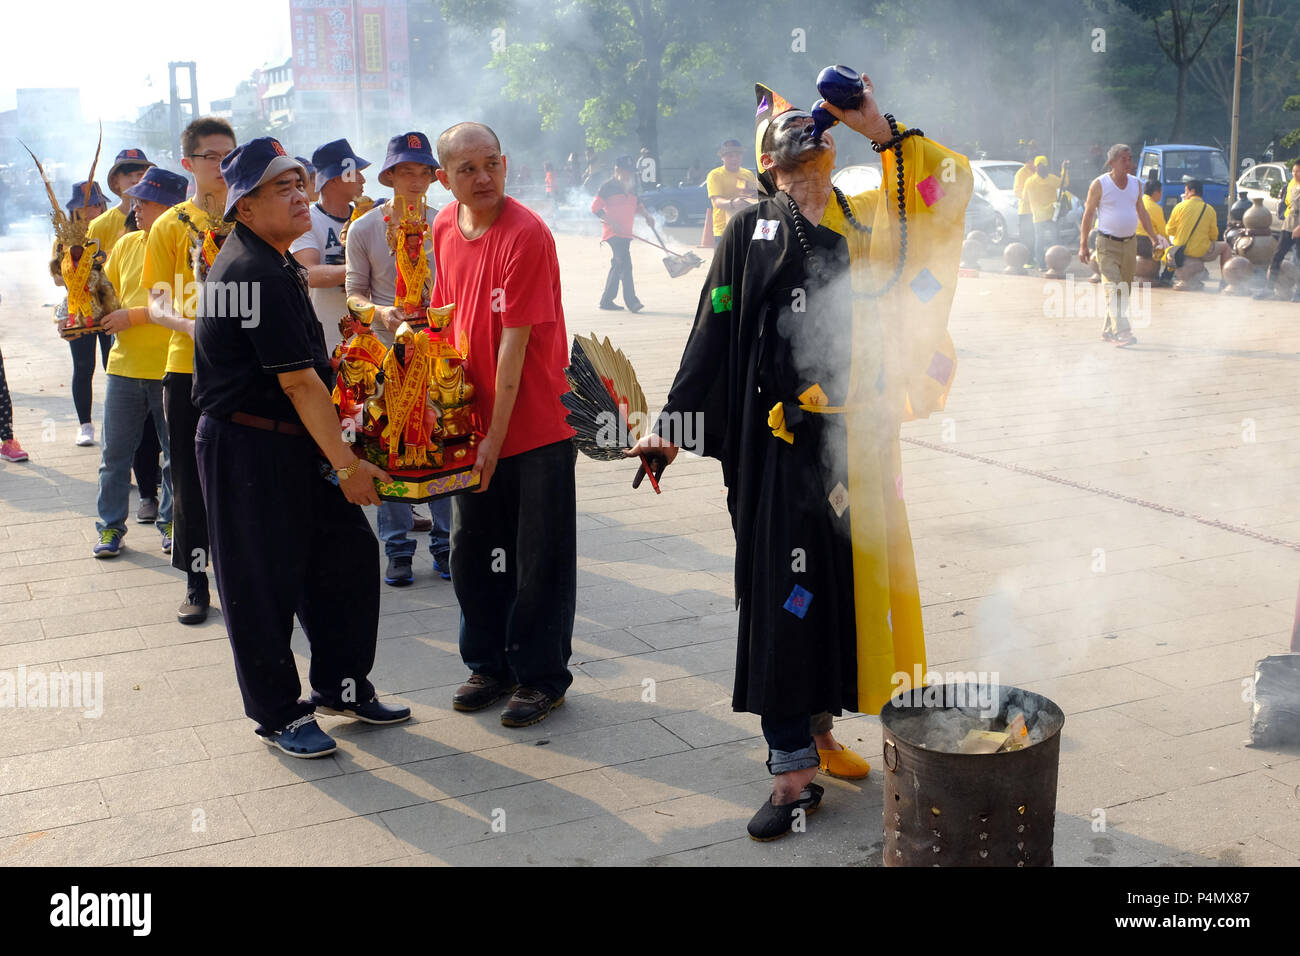 Le moine bouddhiste de boire du vin de riz lors d'une cérémonie devant le Temple de Longyin Fanlu Canton, Taiwan - Buddhistischer Mönch bei einer Zeremonie vor dem Longyin Tempel dans Fanlu Canton, Taiwan Banque D'Images